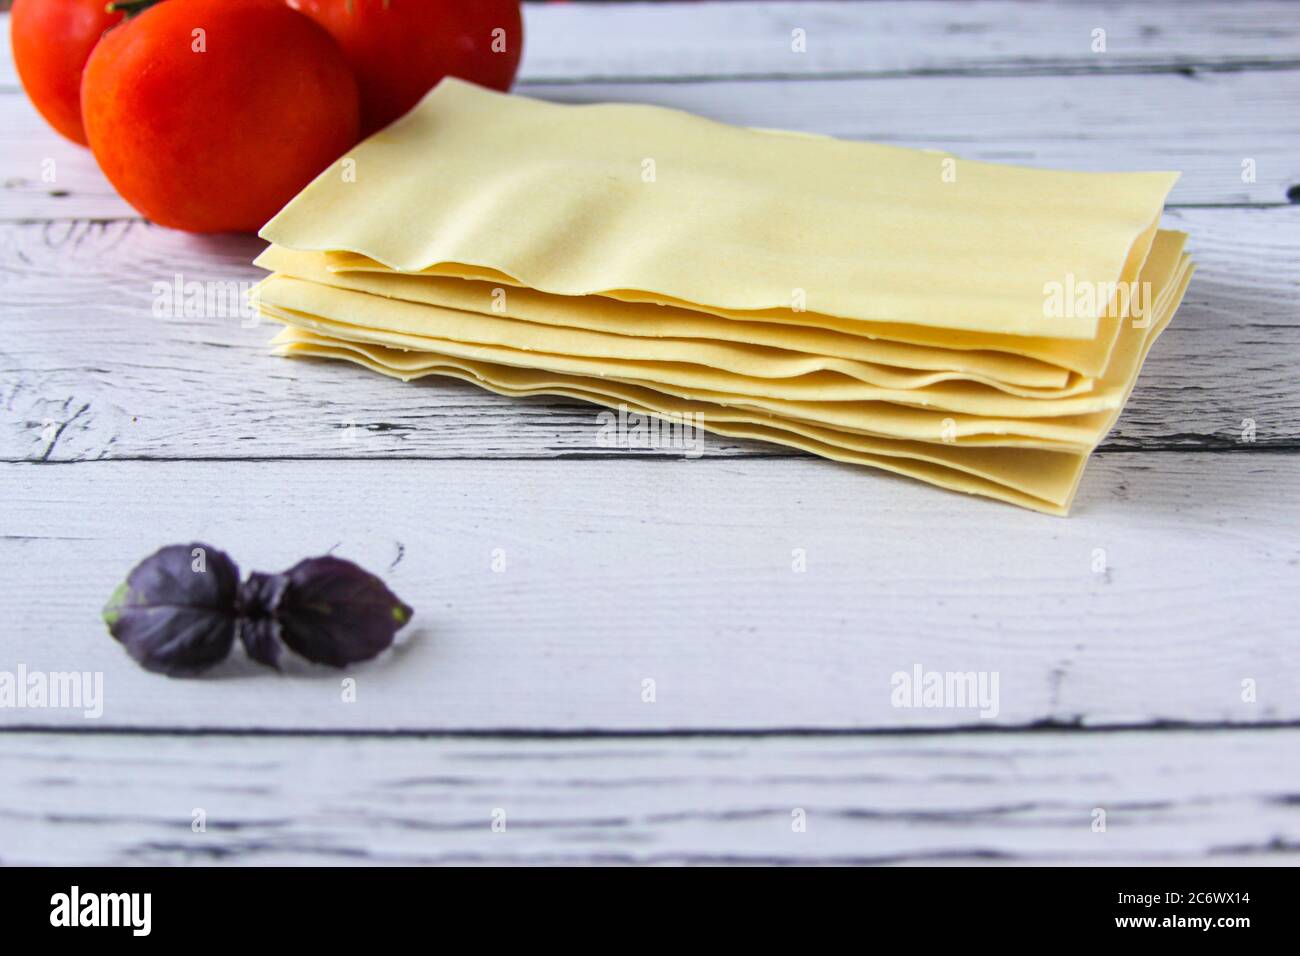 Lasagne Blätter Pasta mit Tomaten und Basilikum Blatt auf einem Holzhintergrund. Zutaten für ein italienisches Rezept. Speicherplatz kopieren. Stockfoto